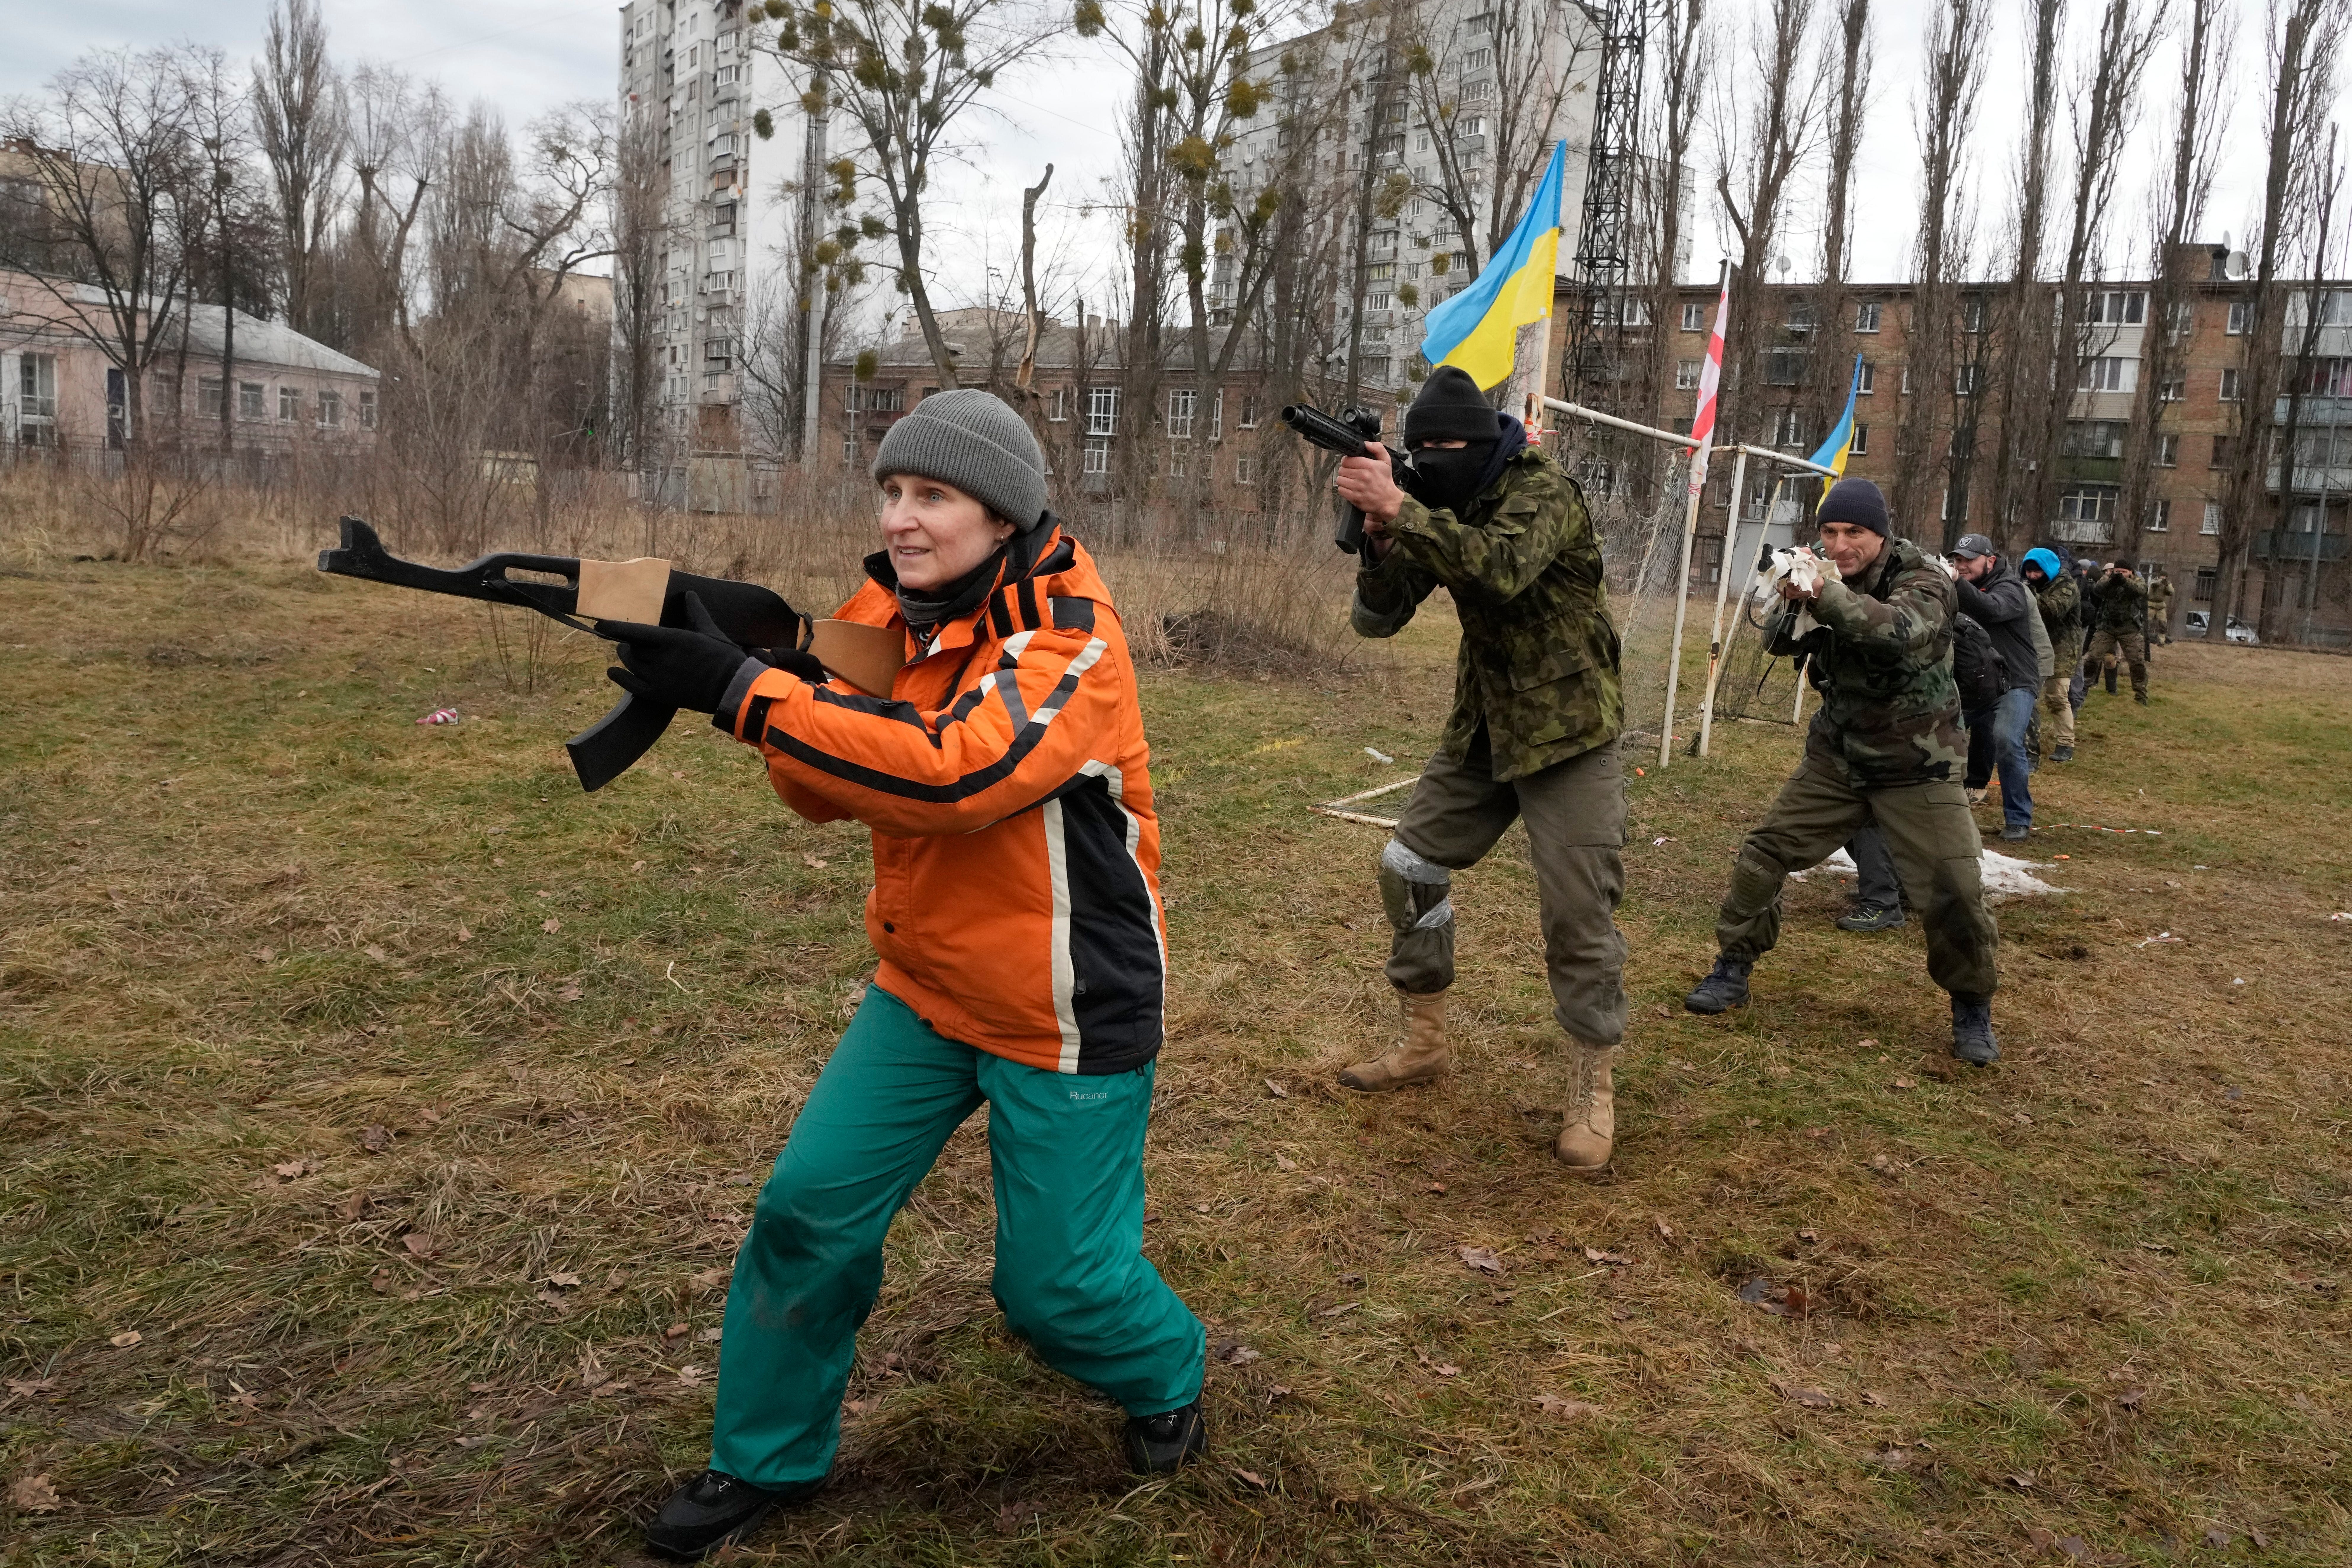 Zivilisten trainieren mit Mitgliedern der georgischen Legion, einer paramilitärischen Einheit, die hauptsächlich aus ethnischen georgischen Freiwilligen besteht, um 2014 in Kiew, Ukraine, gegen russische Streitkräfte in der Ukraine zu kämpfen, Samstag, 19. Februar 2022.